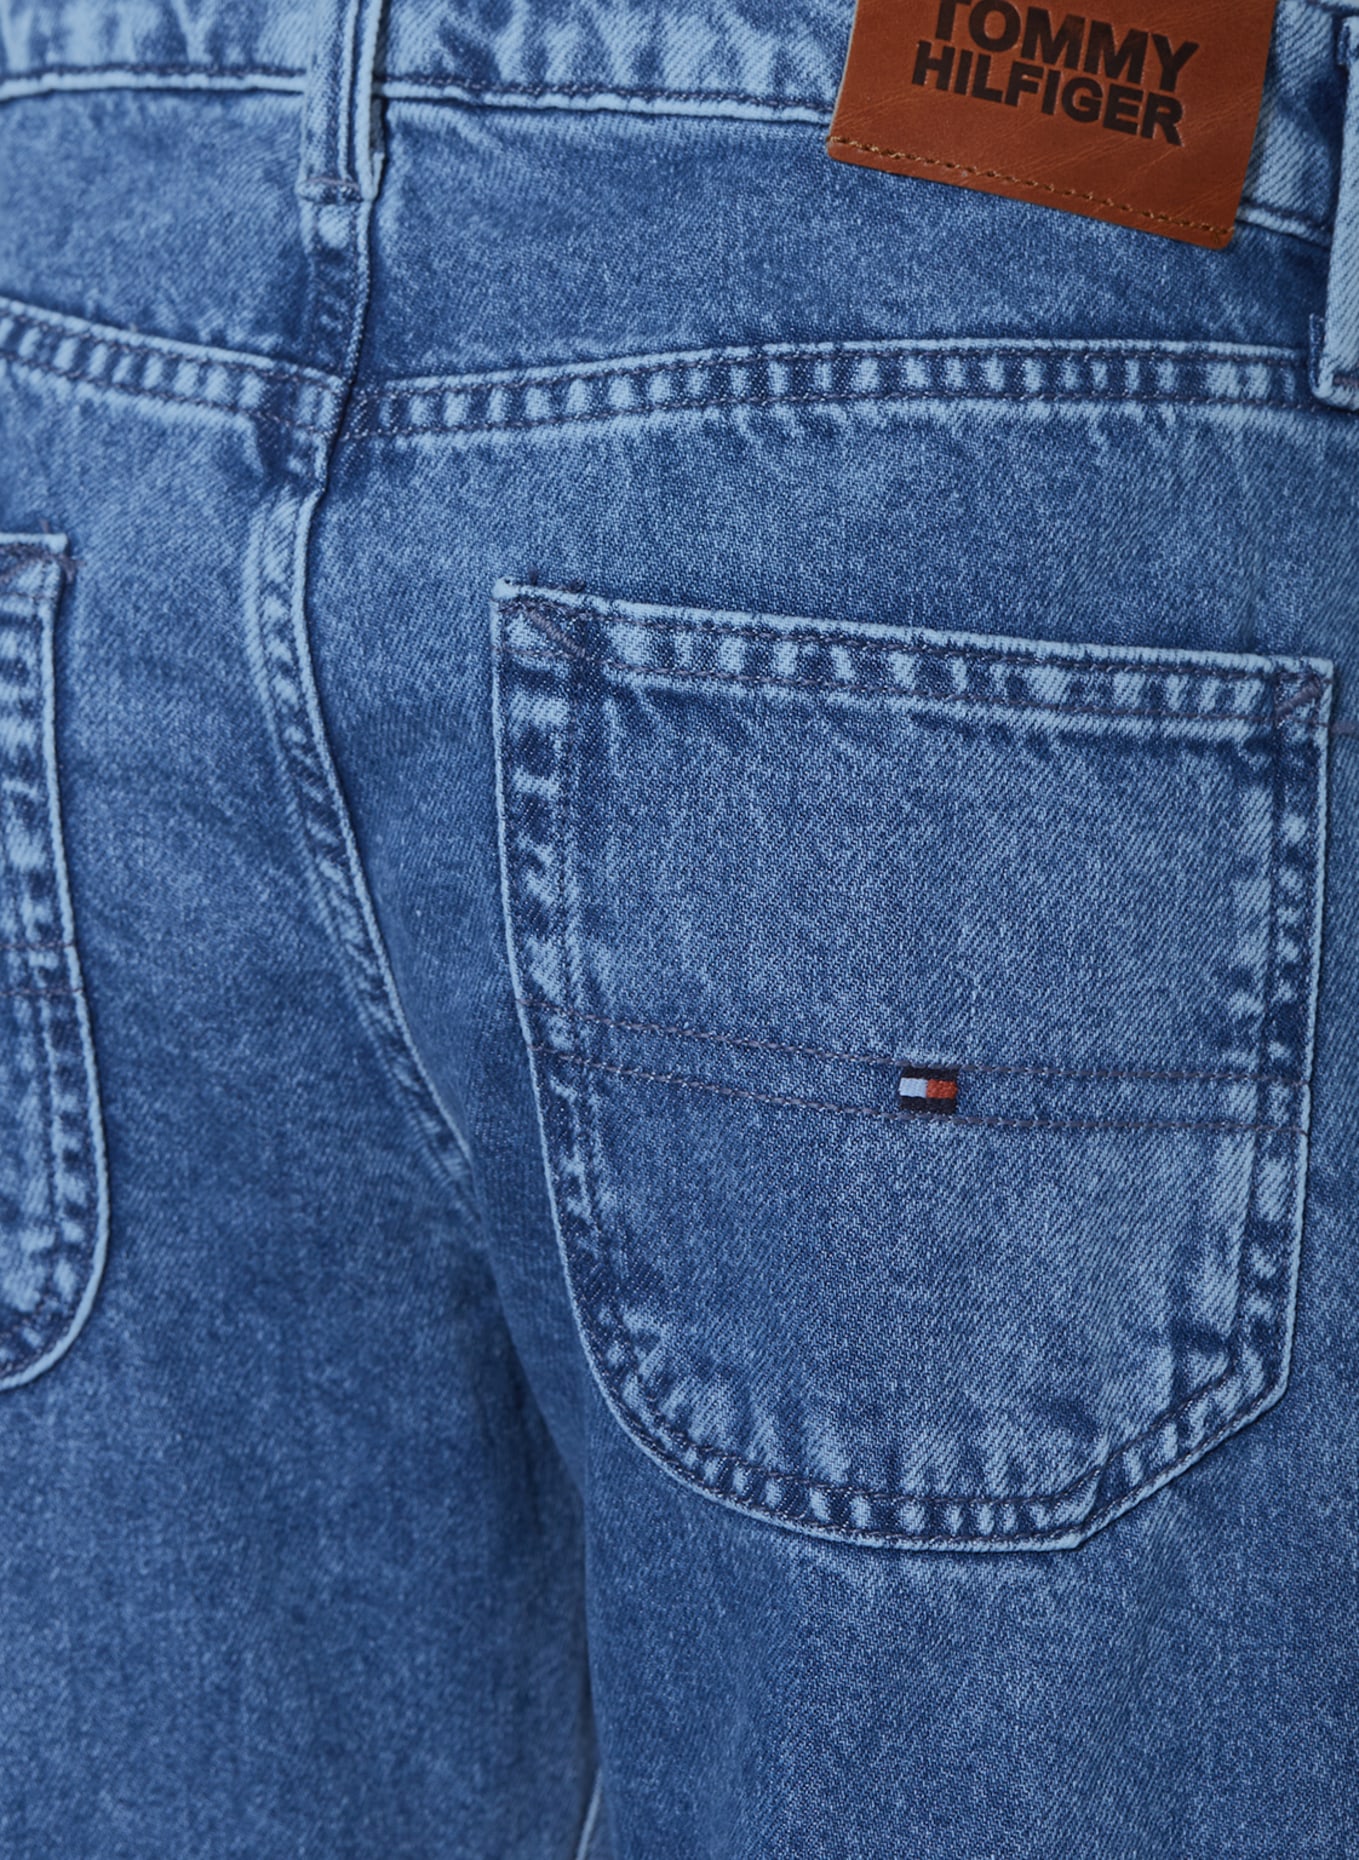 TOMMY HILFIGER Jeans Regular Fit, Farbe: 1A6 Snowwashmid (Bild 3)